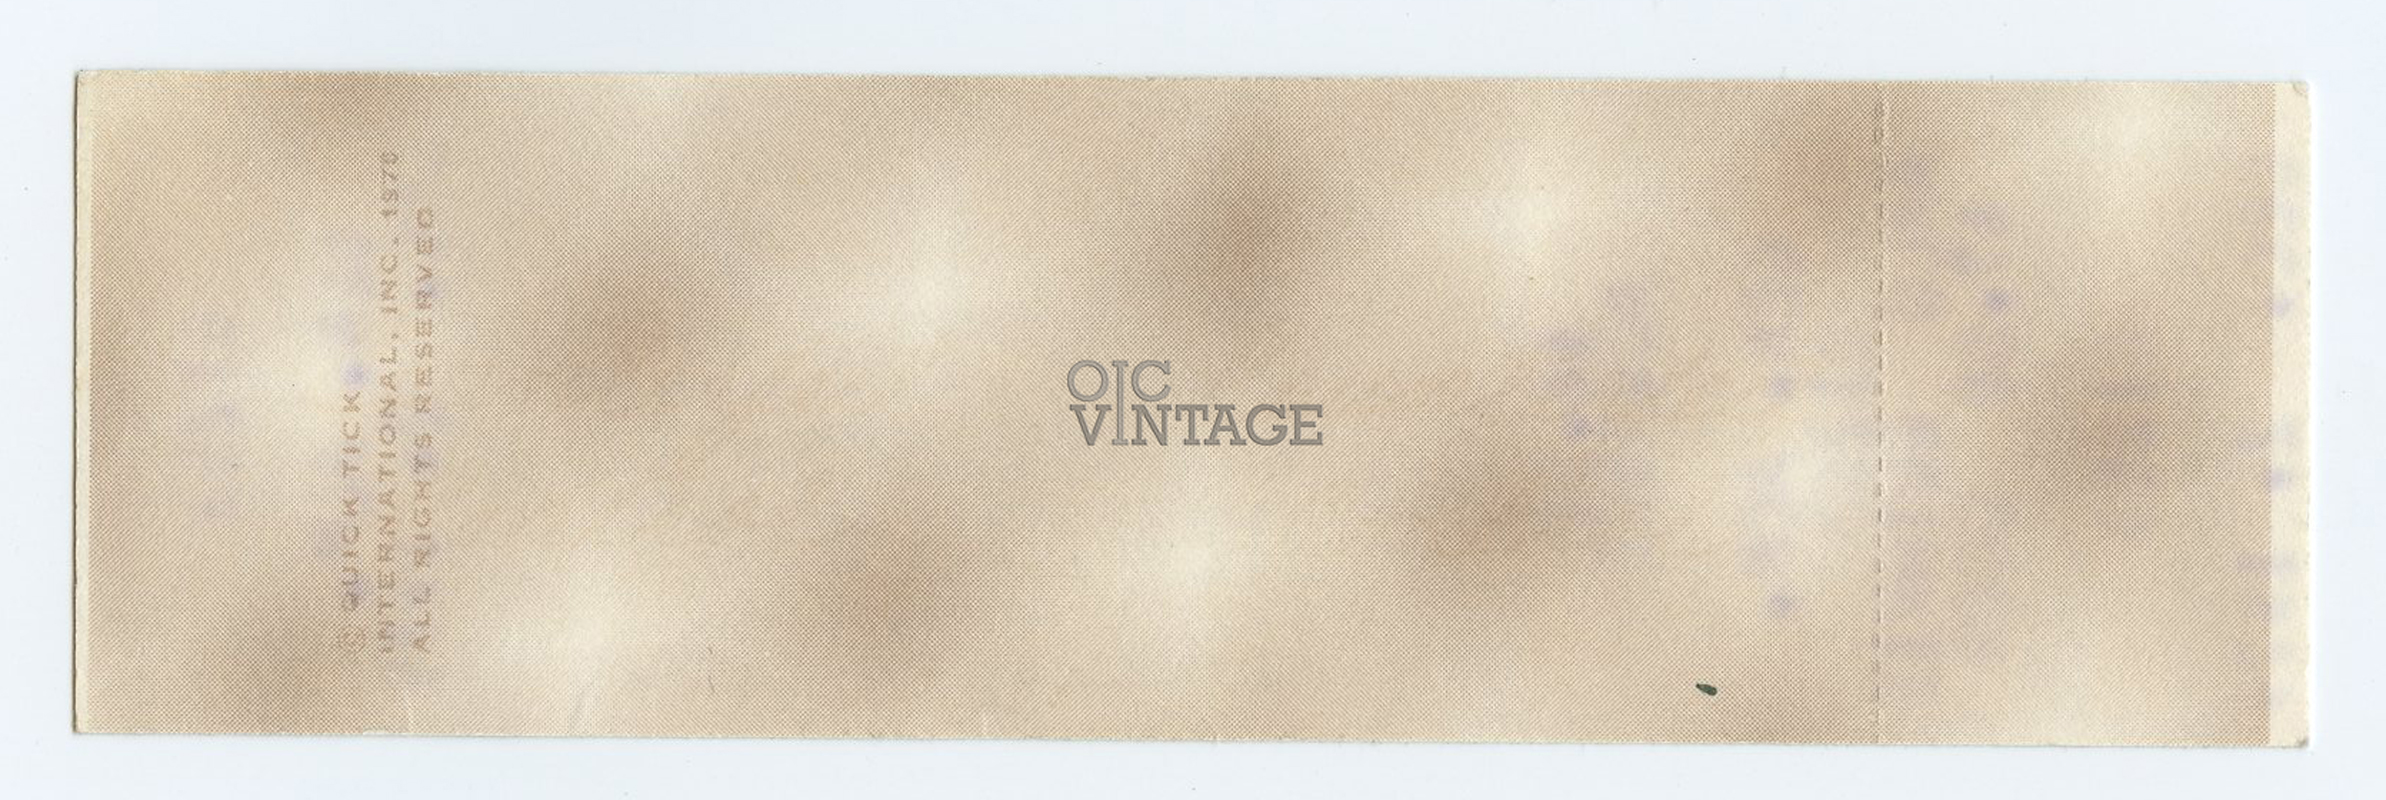 Arlo Guthrie Vintage Ticket 1979 Dec 2 Austin TX 